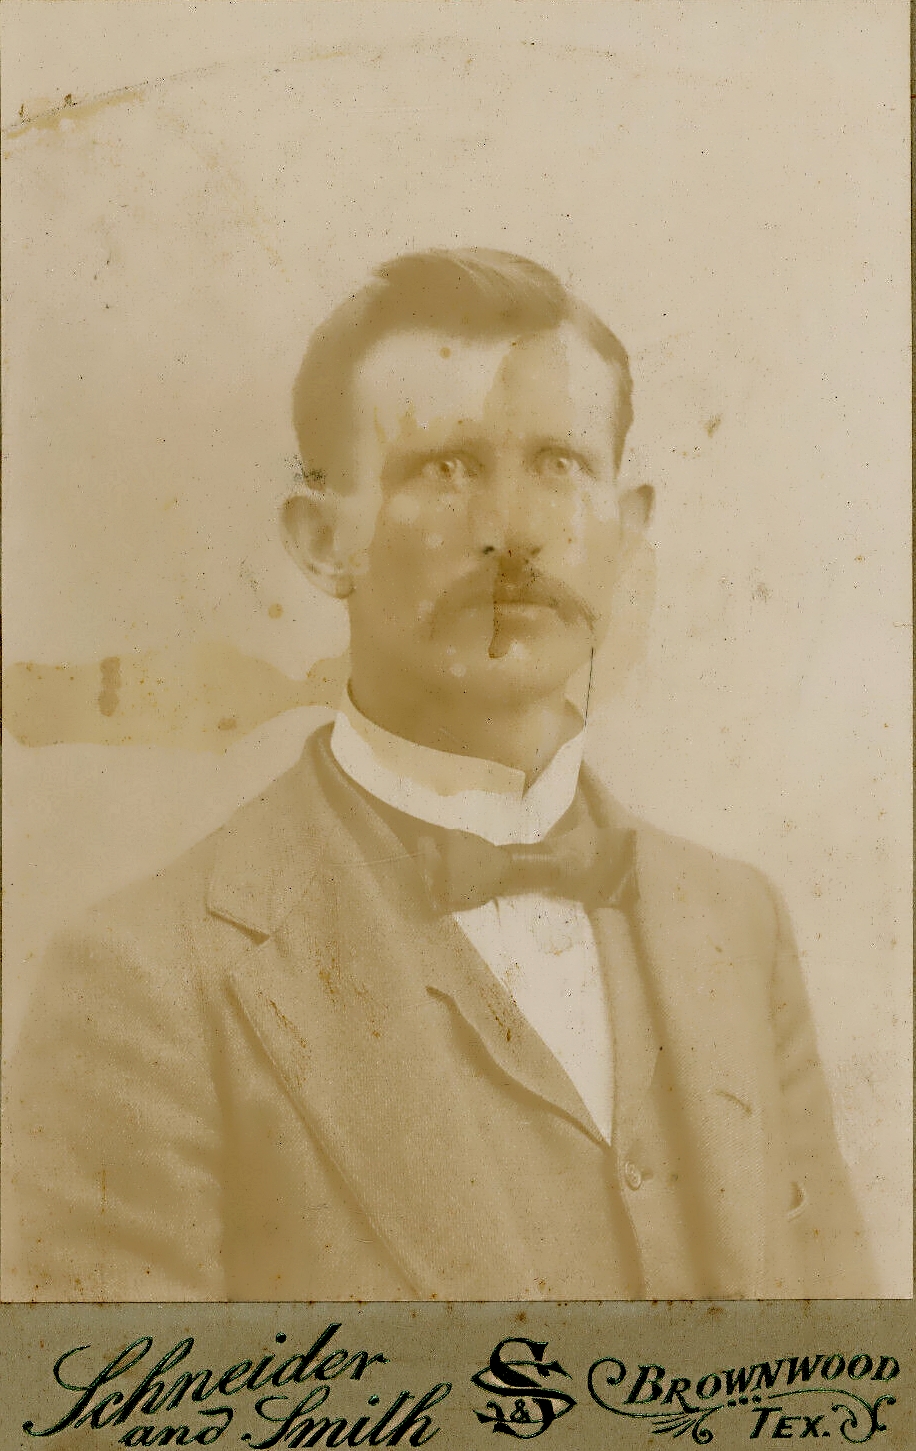 Brownwood Texas Gentleman in 1890